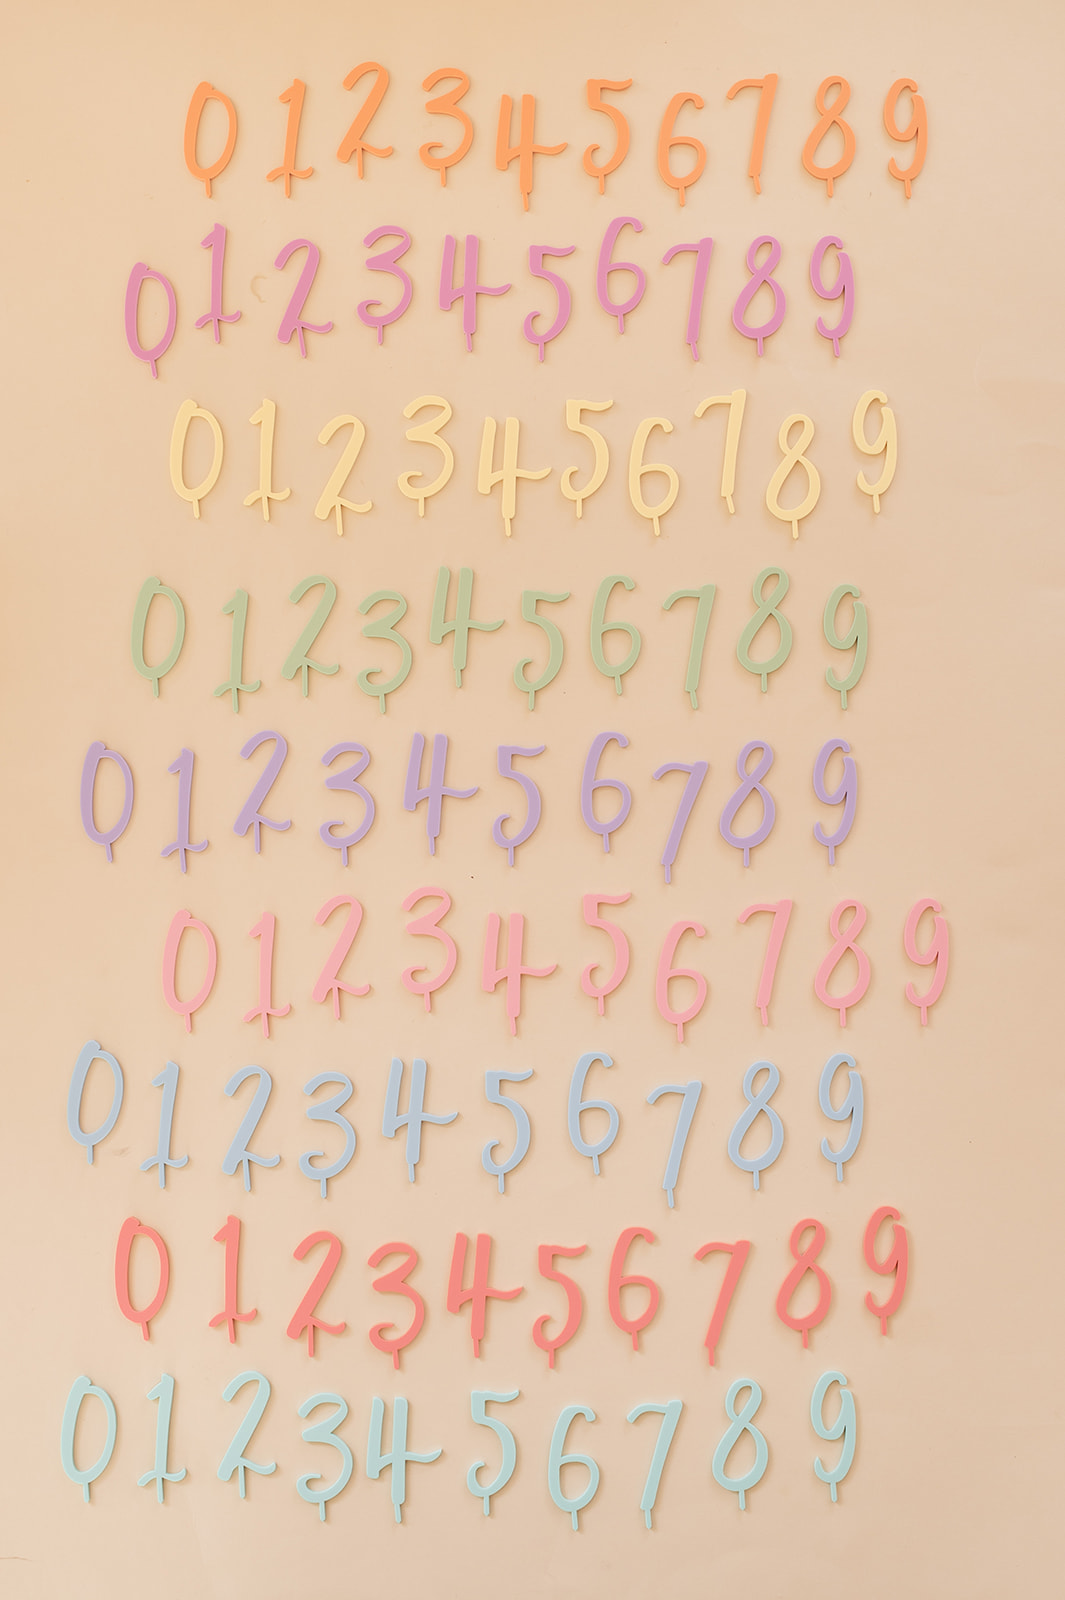 Auf diesem Bild sieht man bunten Zahlenstecker für den Geburtstagskranz.